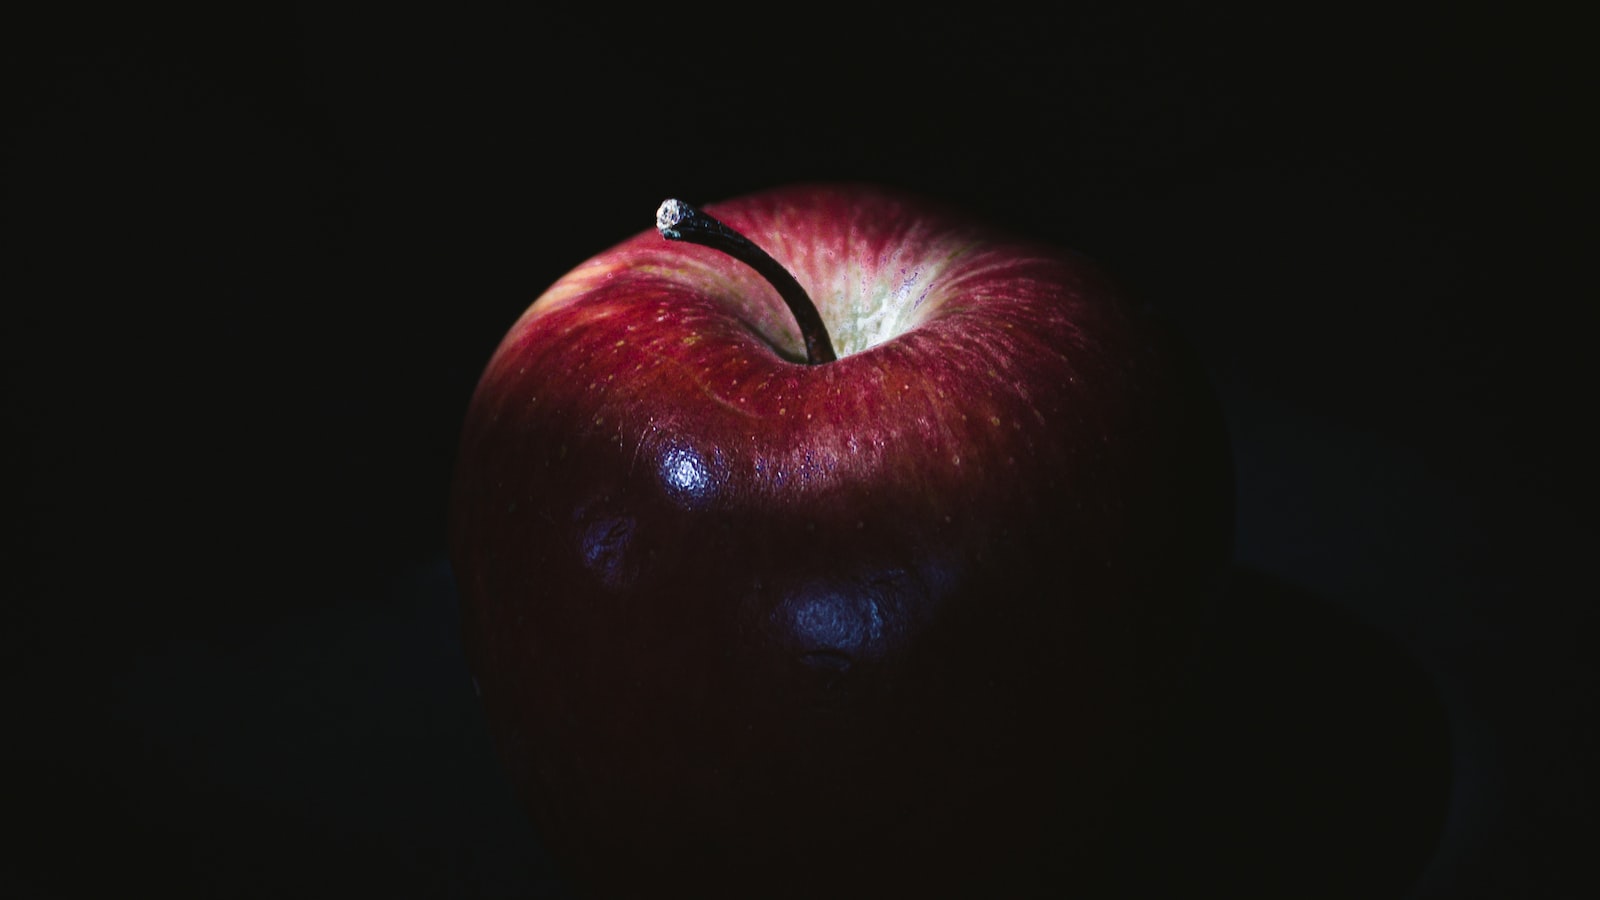 4. Khuyến Khích Mua Hàng Apple Chất Lượng Nhất